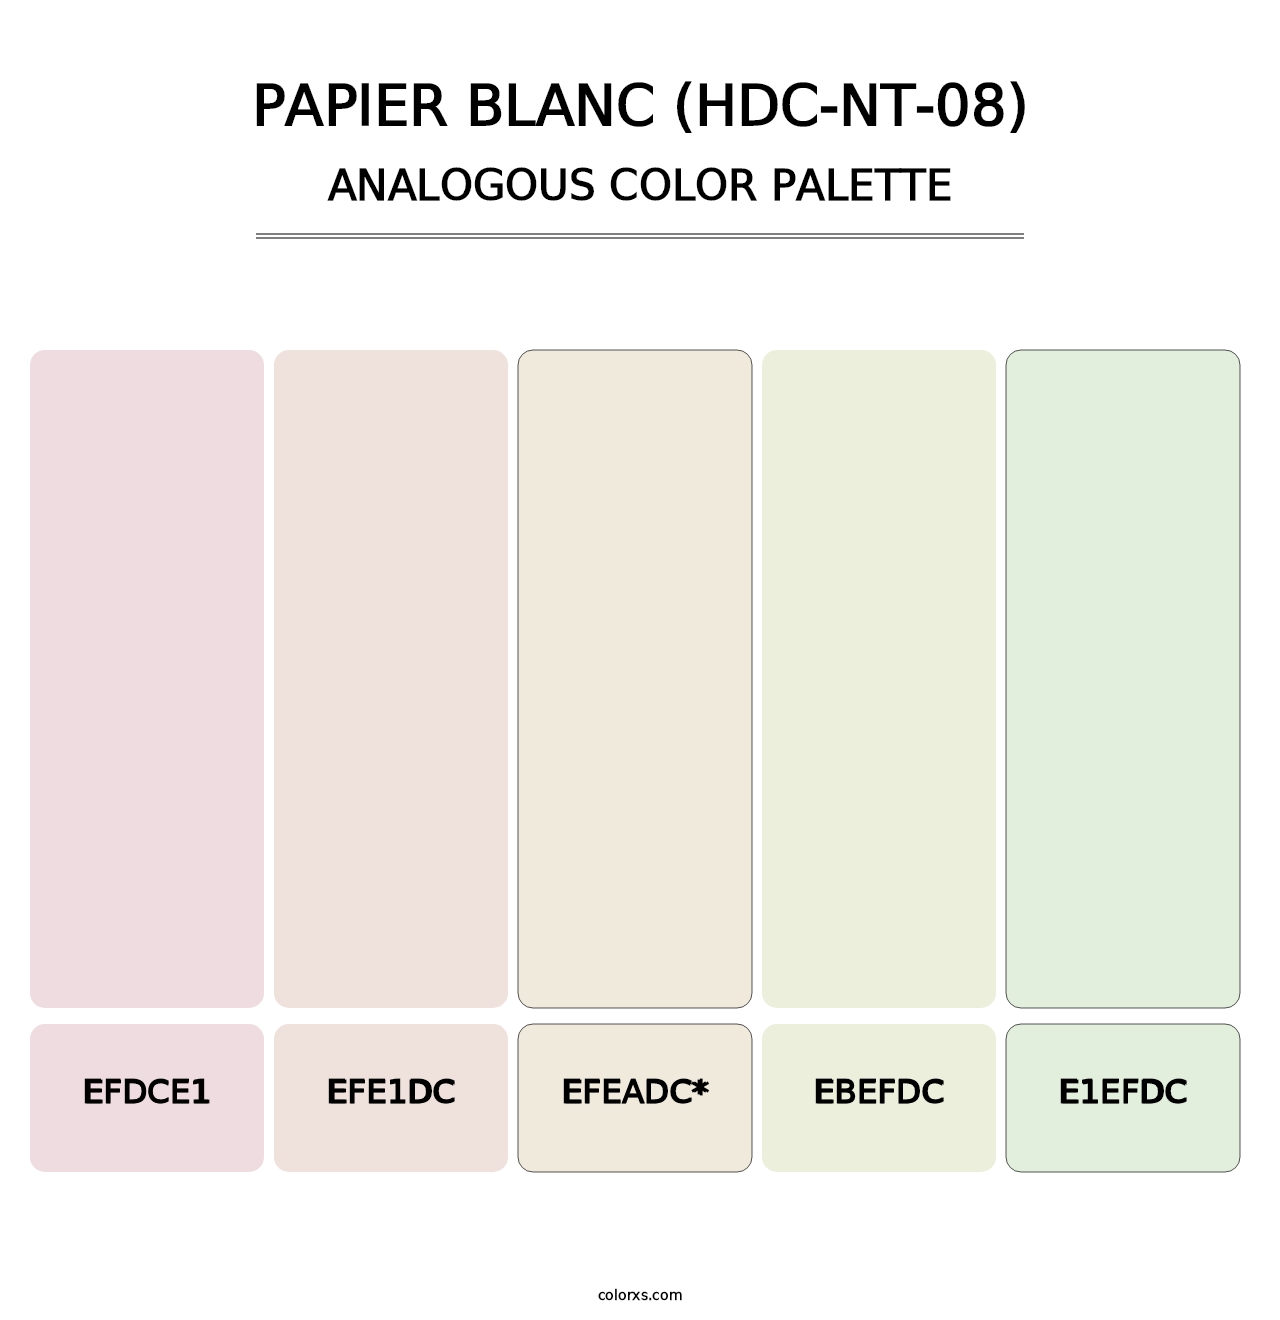 Papier Blanc (HDC-NT-08) - Analogous Color Palette